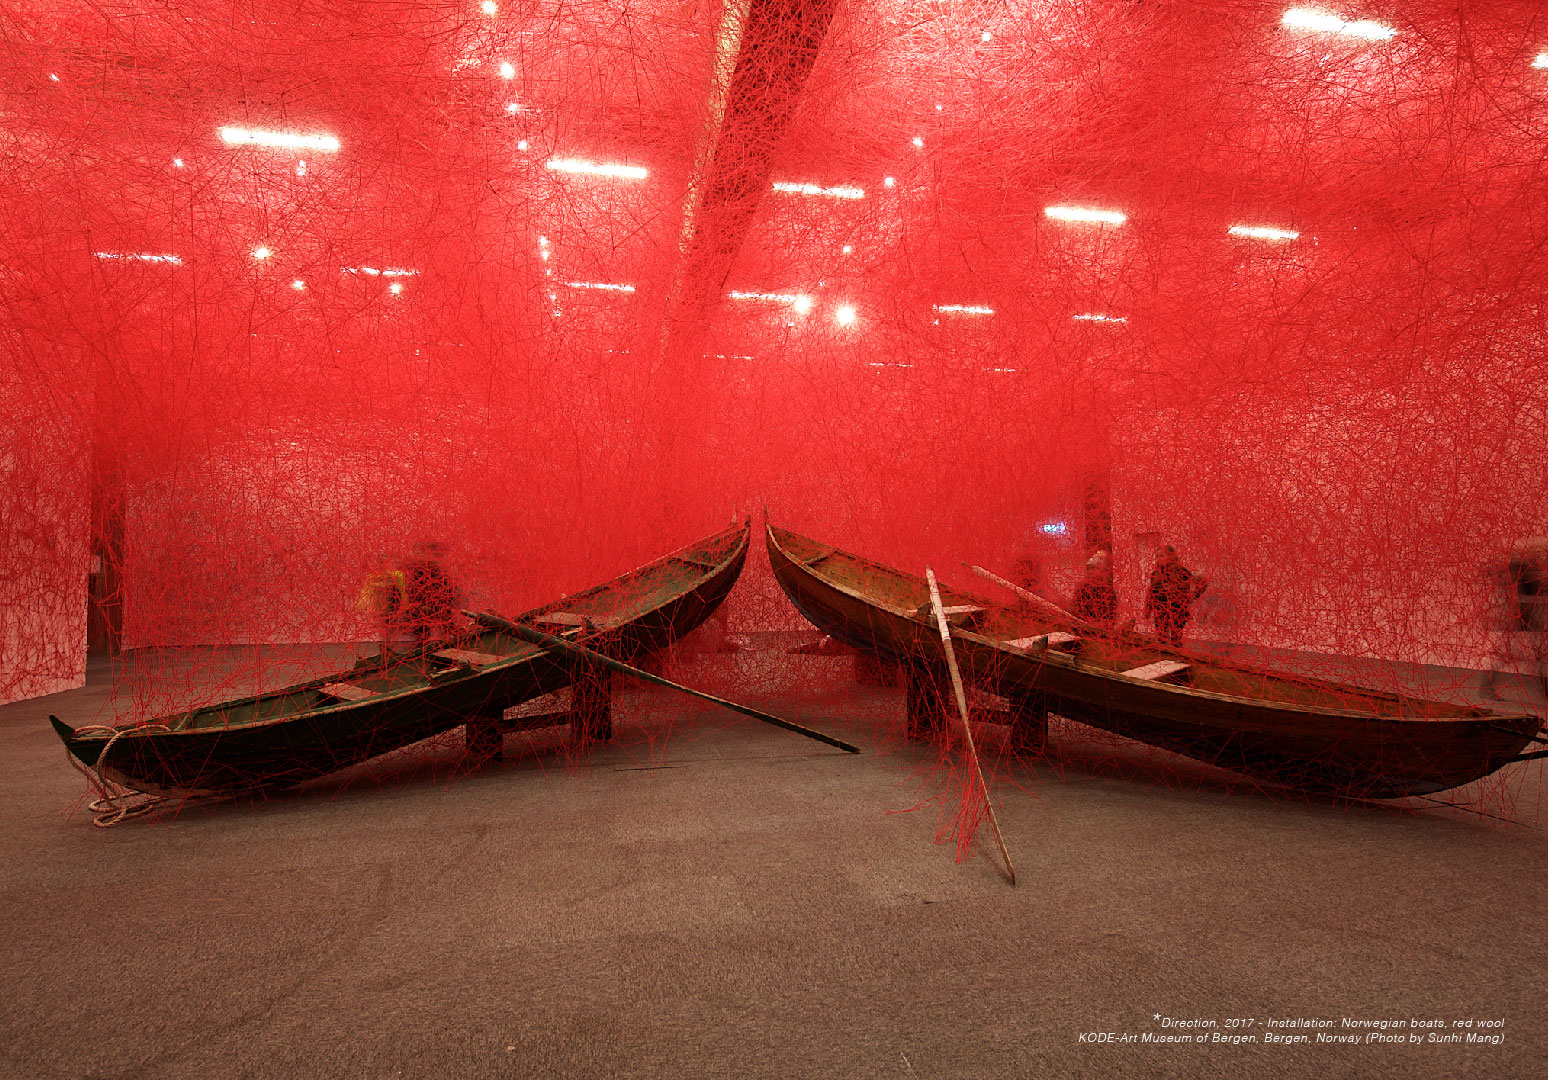 Mở cửa triển lãm sắp đặt “Thủy triều cảm xúc” của nghệ sĩ Chiharu Shiota tại Việt Nam - Ảnh 2.